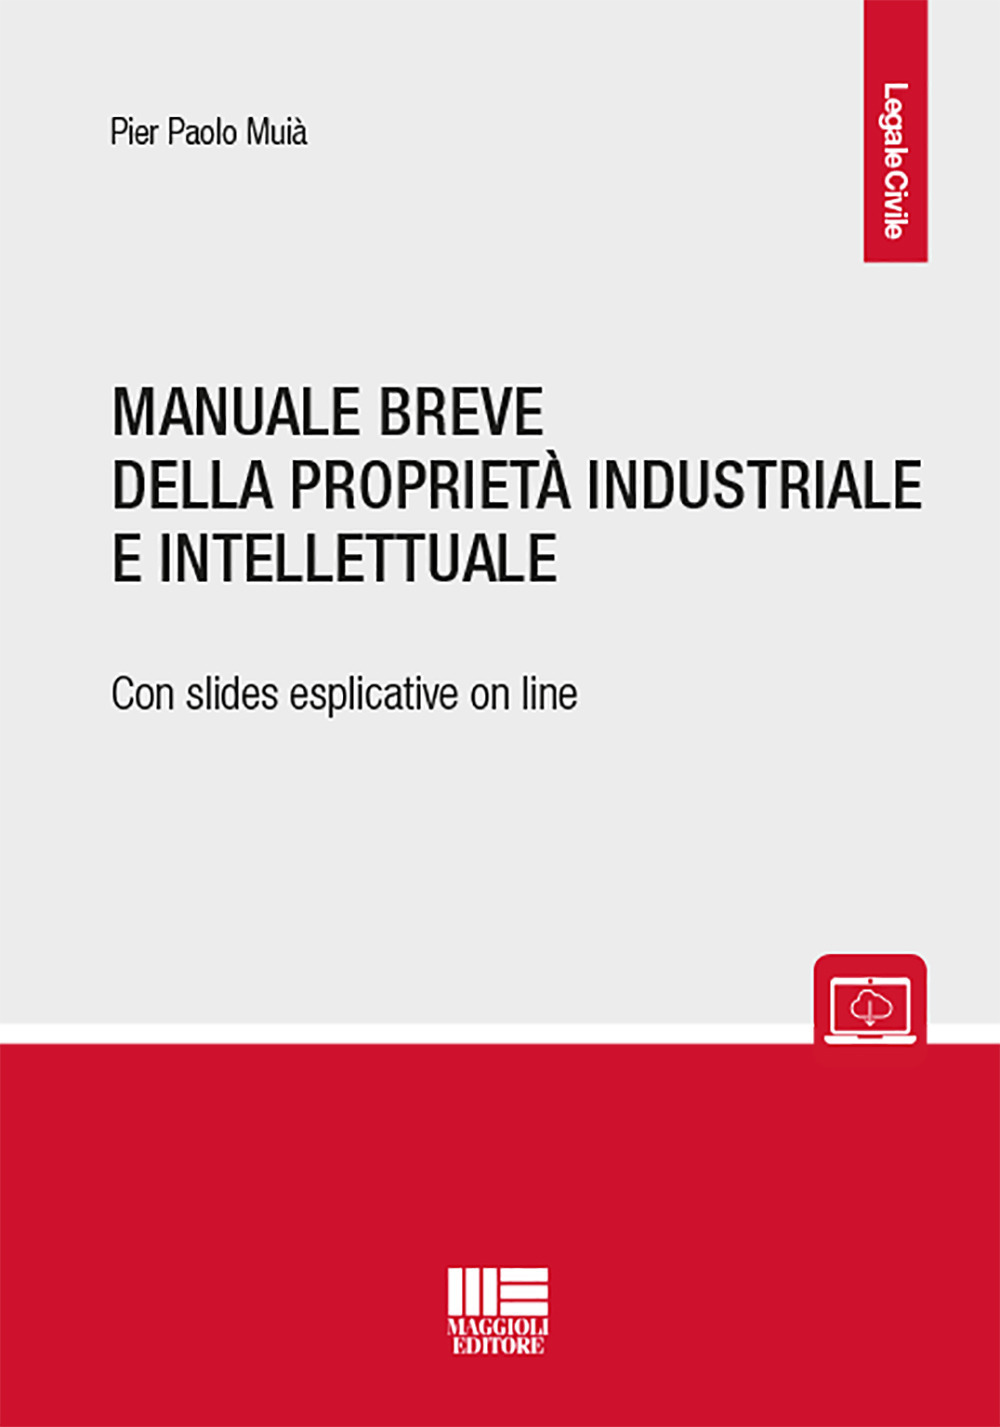 Image of Manuale breve della proprietà intellettuale e industriale